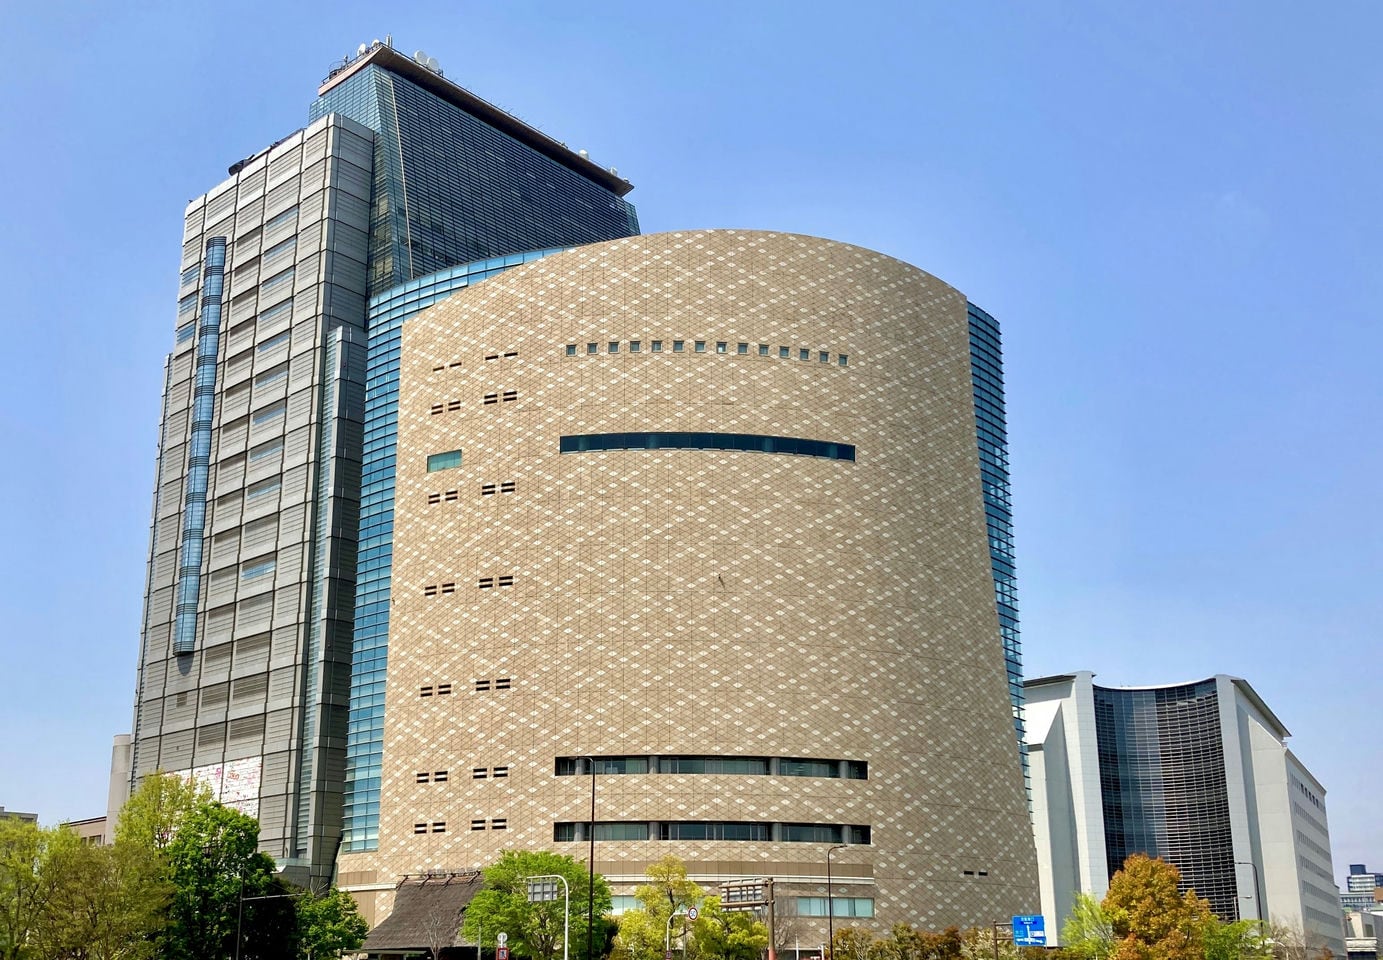 大阪历史博物馆